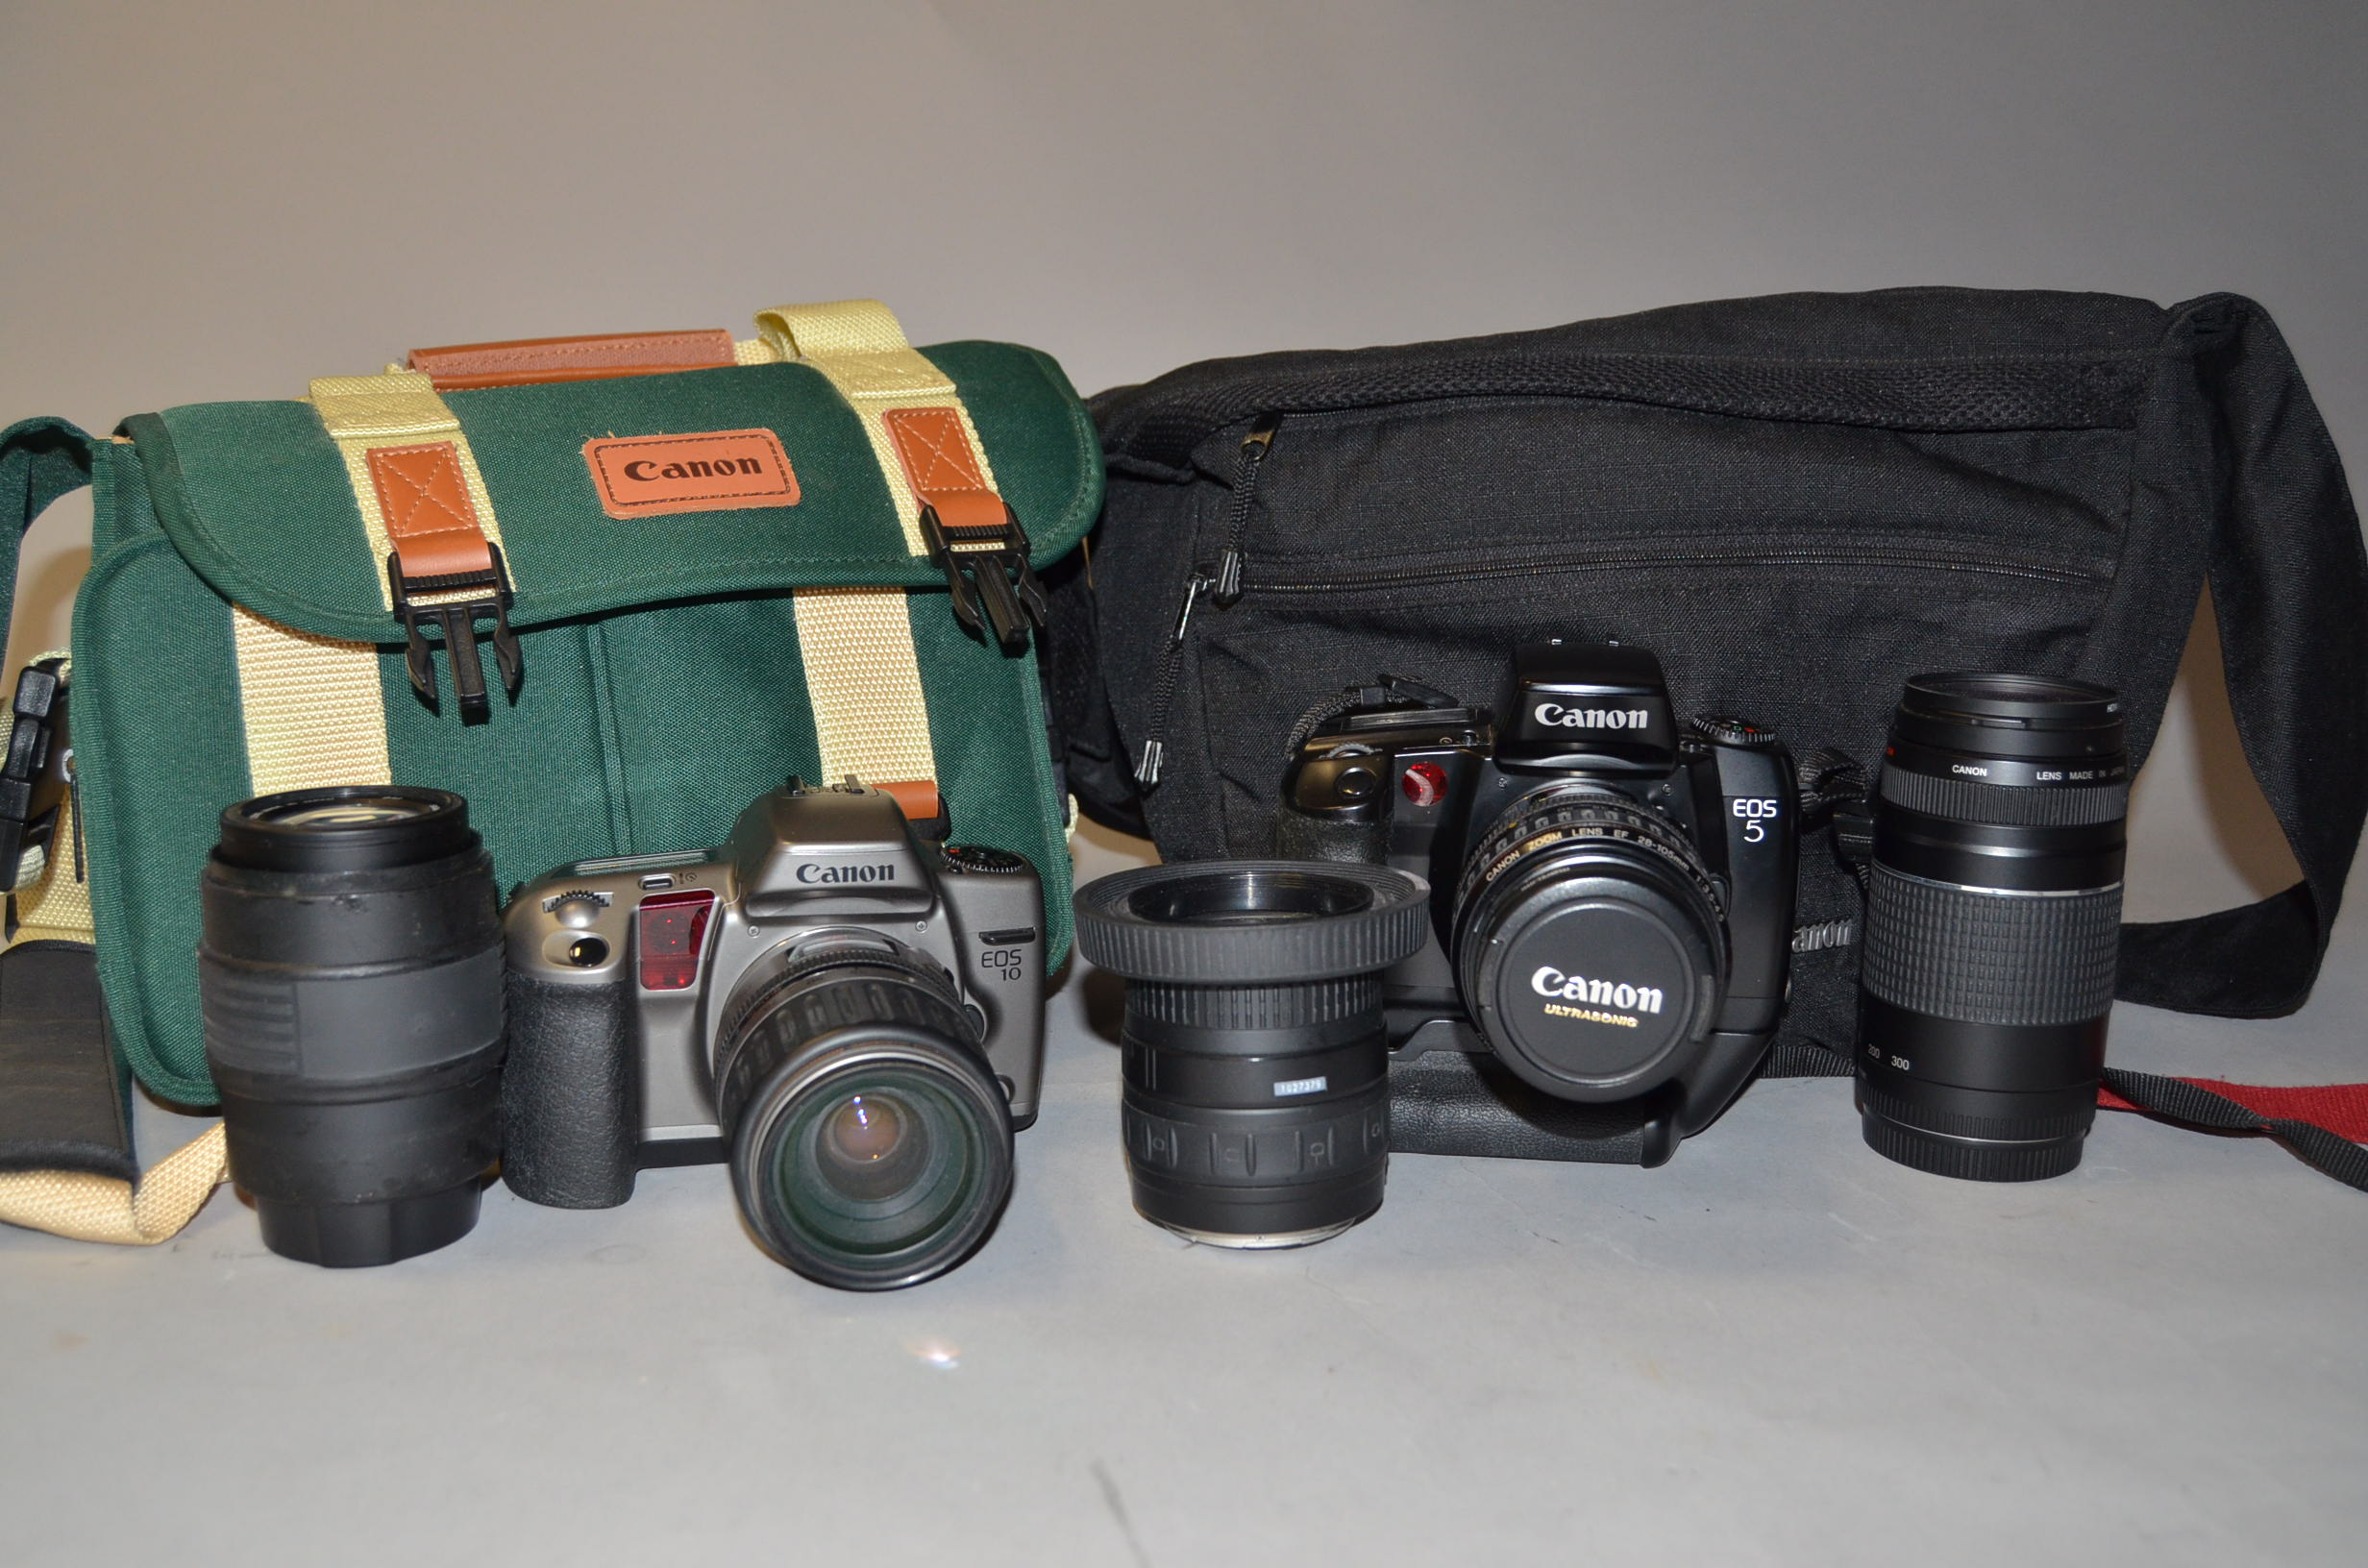 A Canon EOS 5 Camera and a EOS 10 SLR Camera, EOS 5, shutter